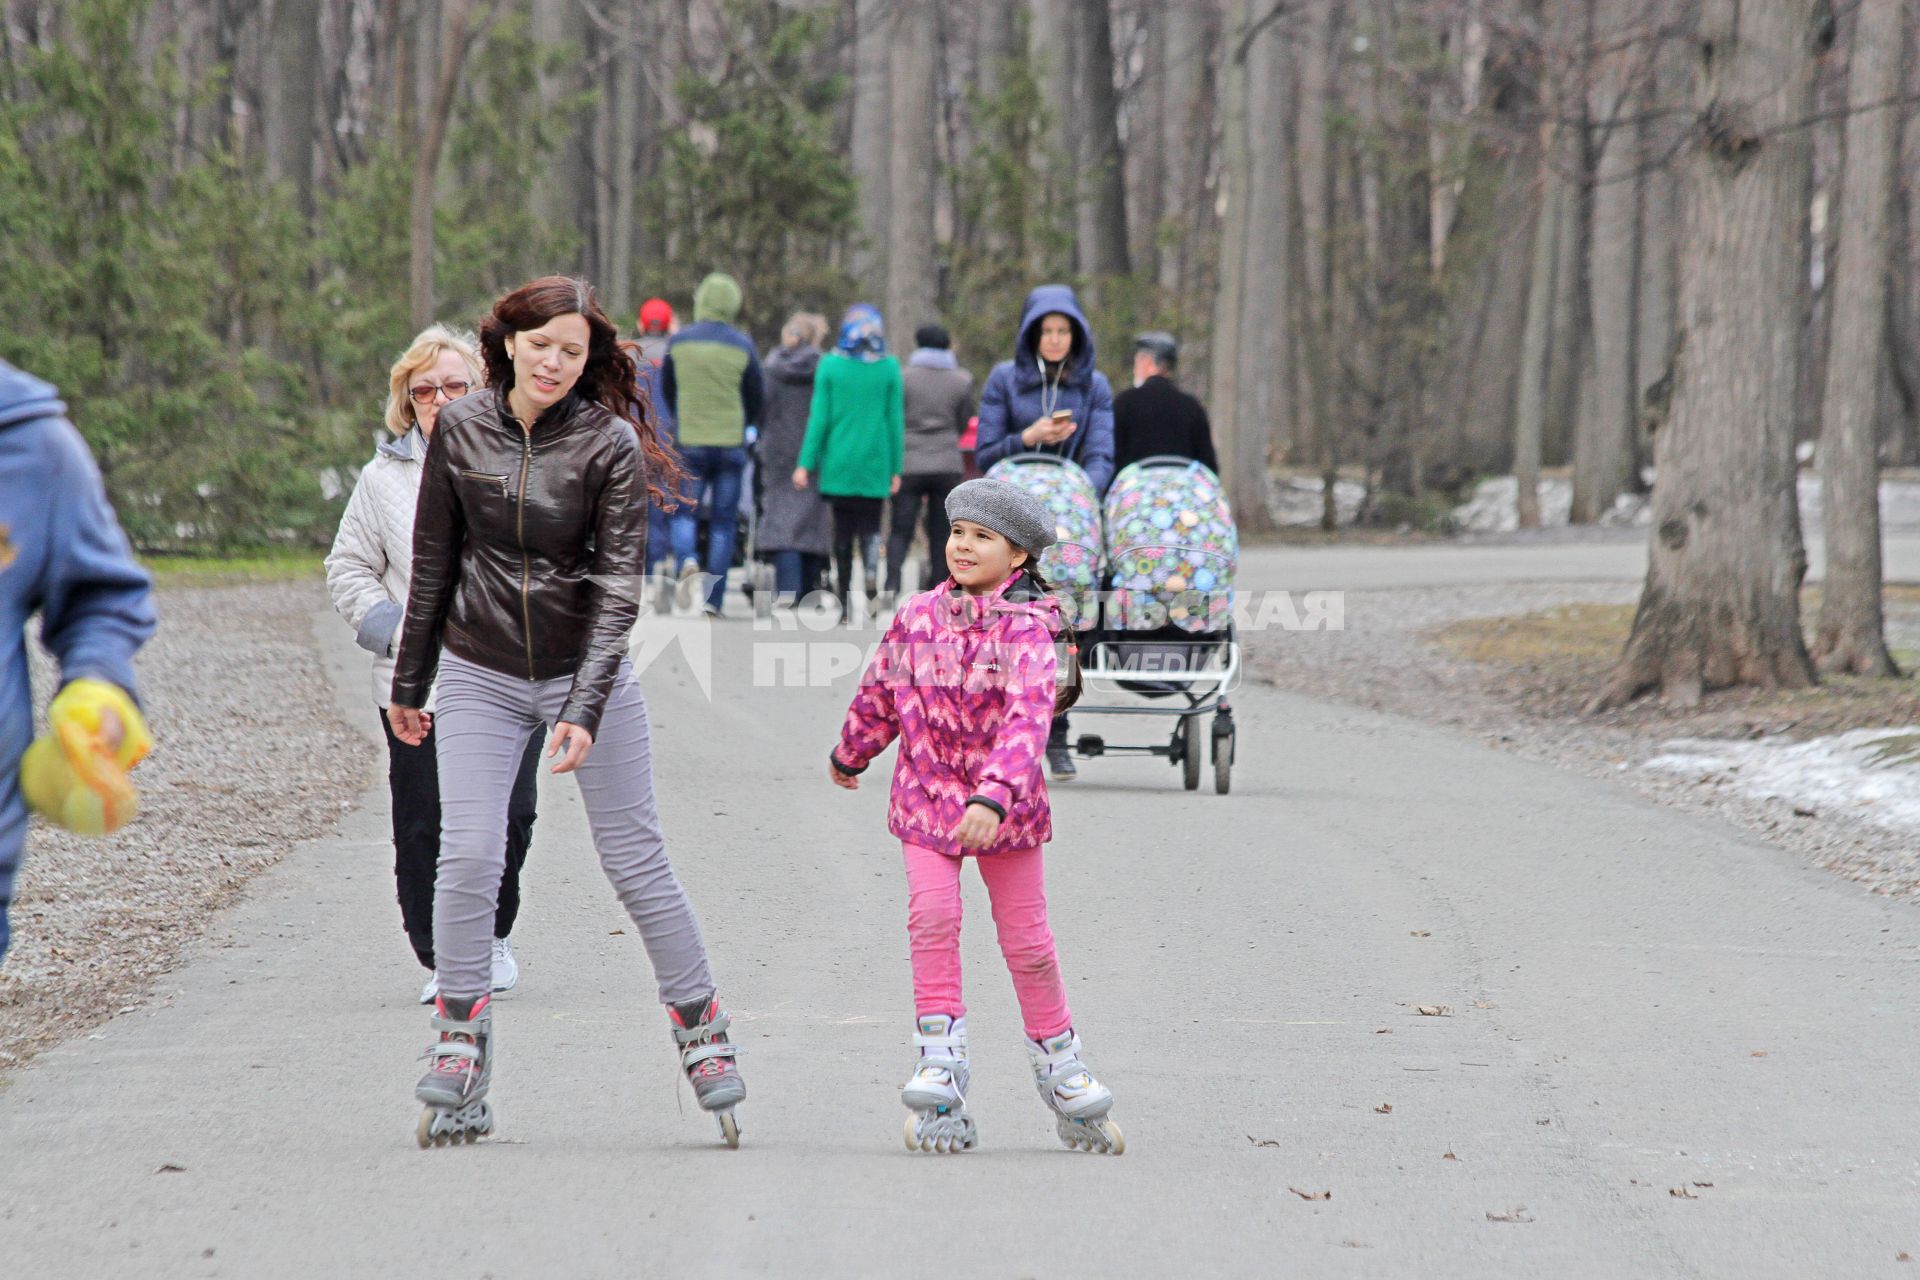 Уфа. Мама с дочкой на роликовых коньках на аллее парка.